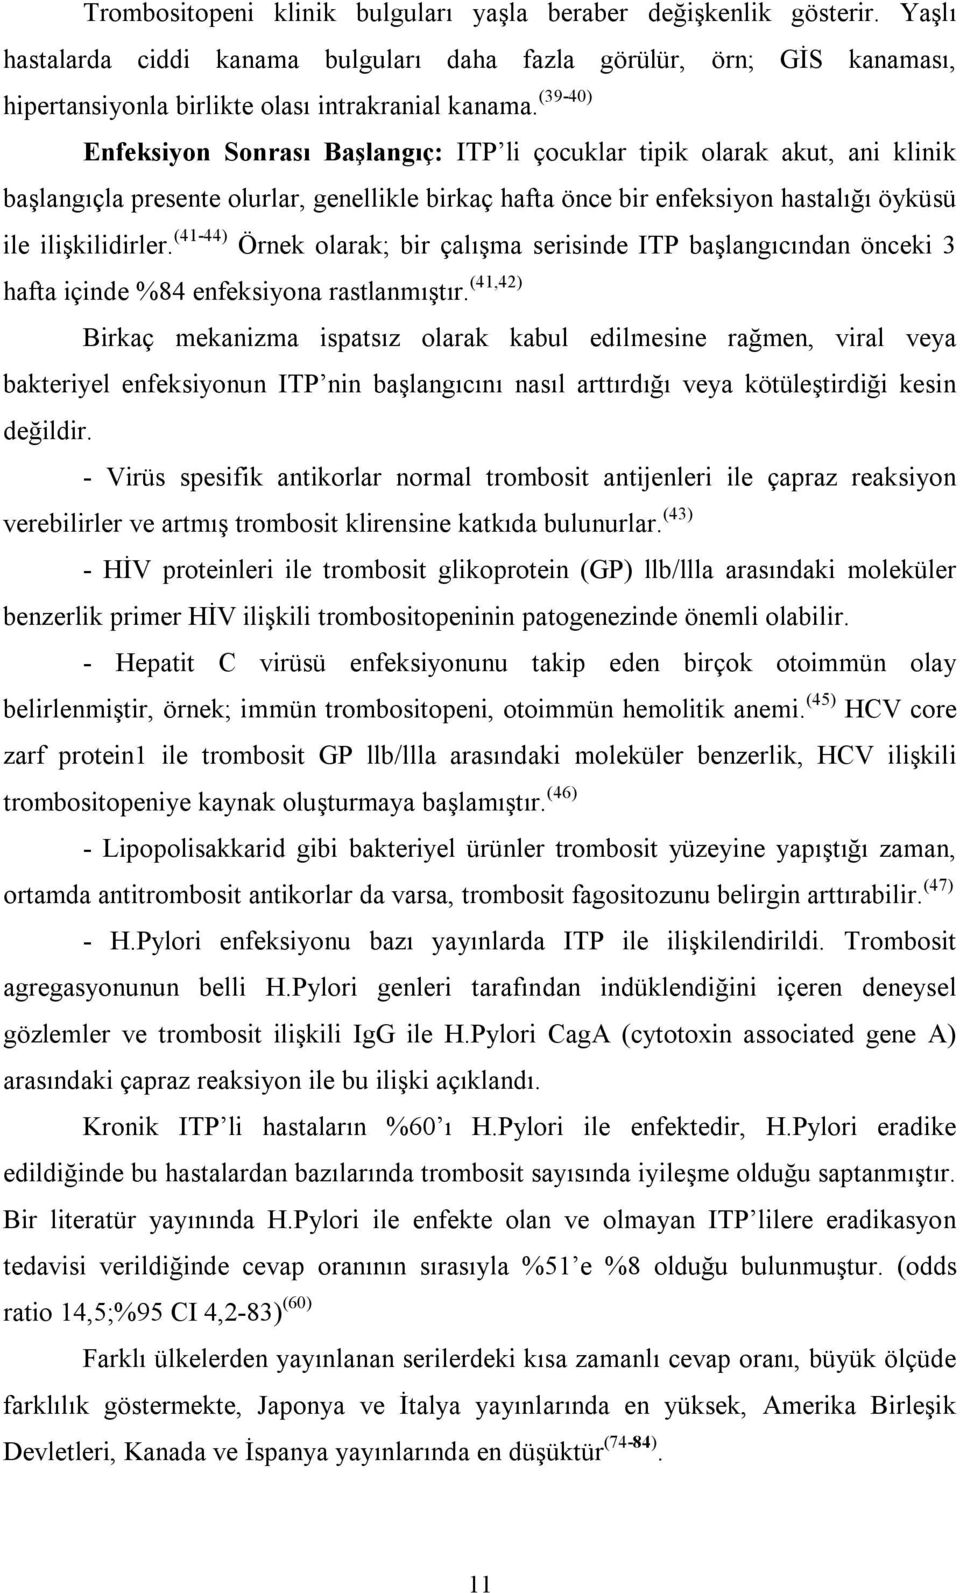 (41-44) Örnek olarak; bir çalışma serisinde ITP başlangıcından önceki 3 hafta içinde %84 enfeksiyona rastlanmıştır.